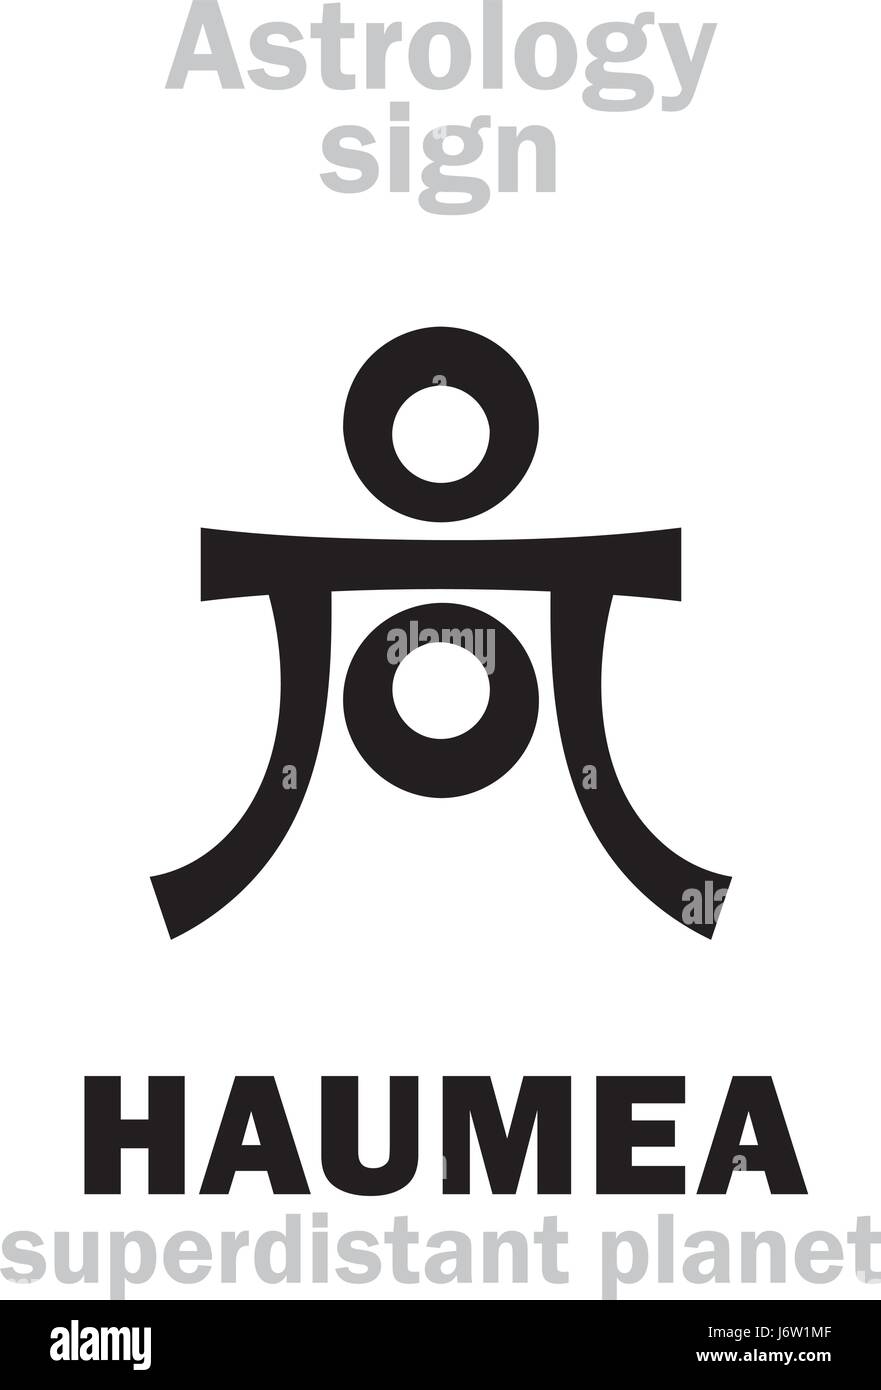 Astrologie-Alphabet: HAUMEA, superdistant Zwergplanet. Hieroglyphen Charakter Zeichen (einzelnes Symbol). Stock Vektor